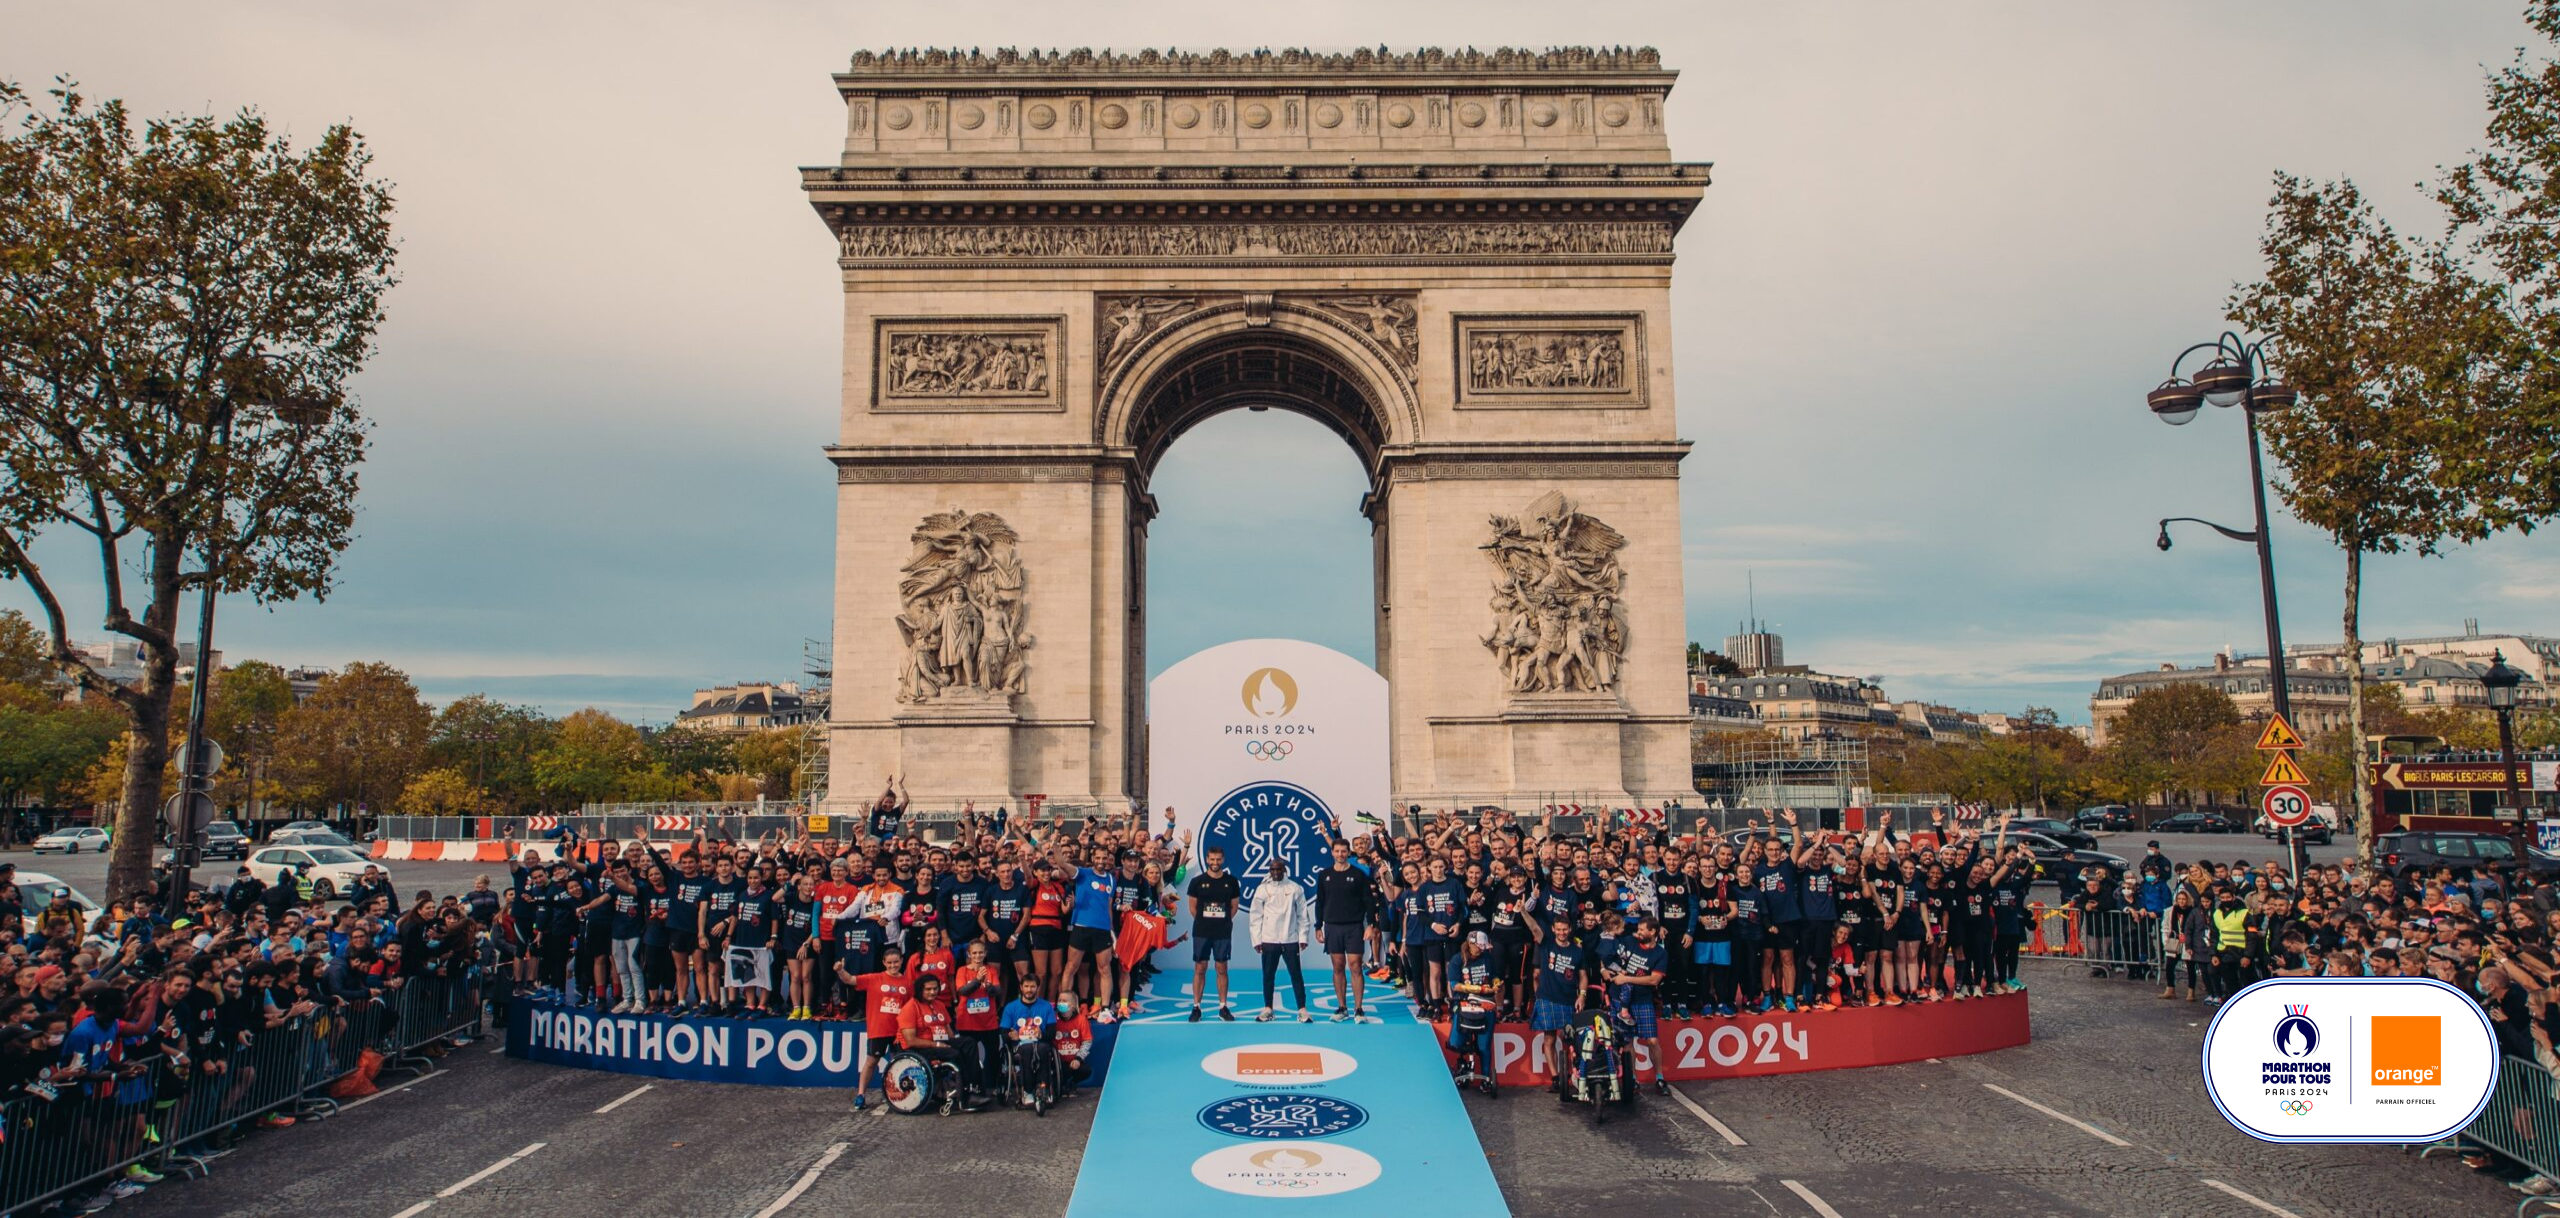 Le Marathon Pour Tous de Paris 2024